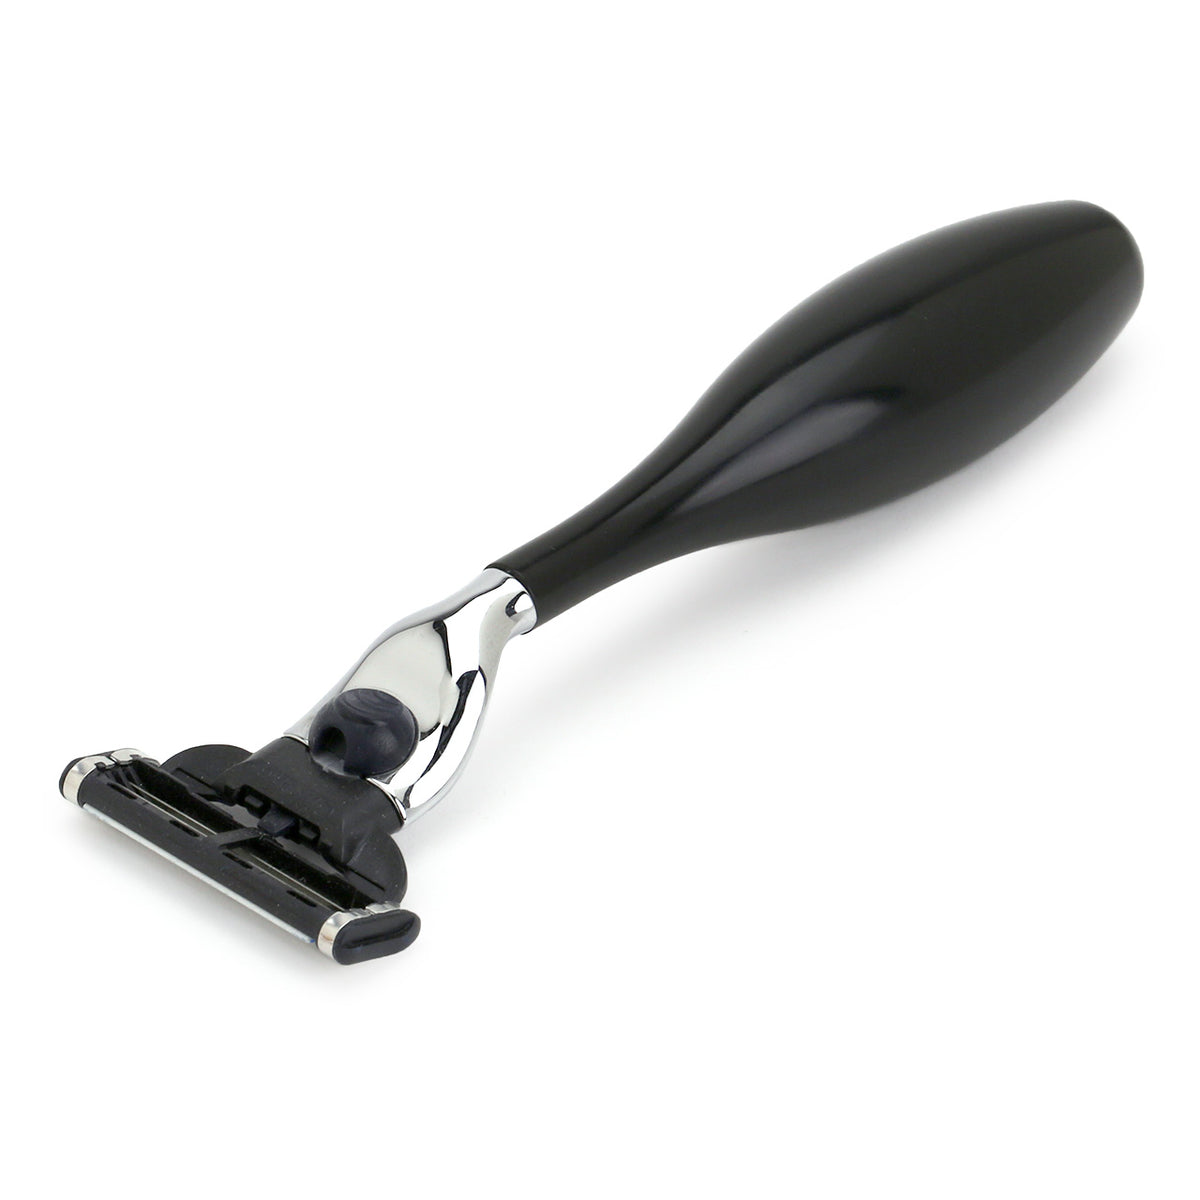 Merker black grippy-handled Mach3 razor for men or women